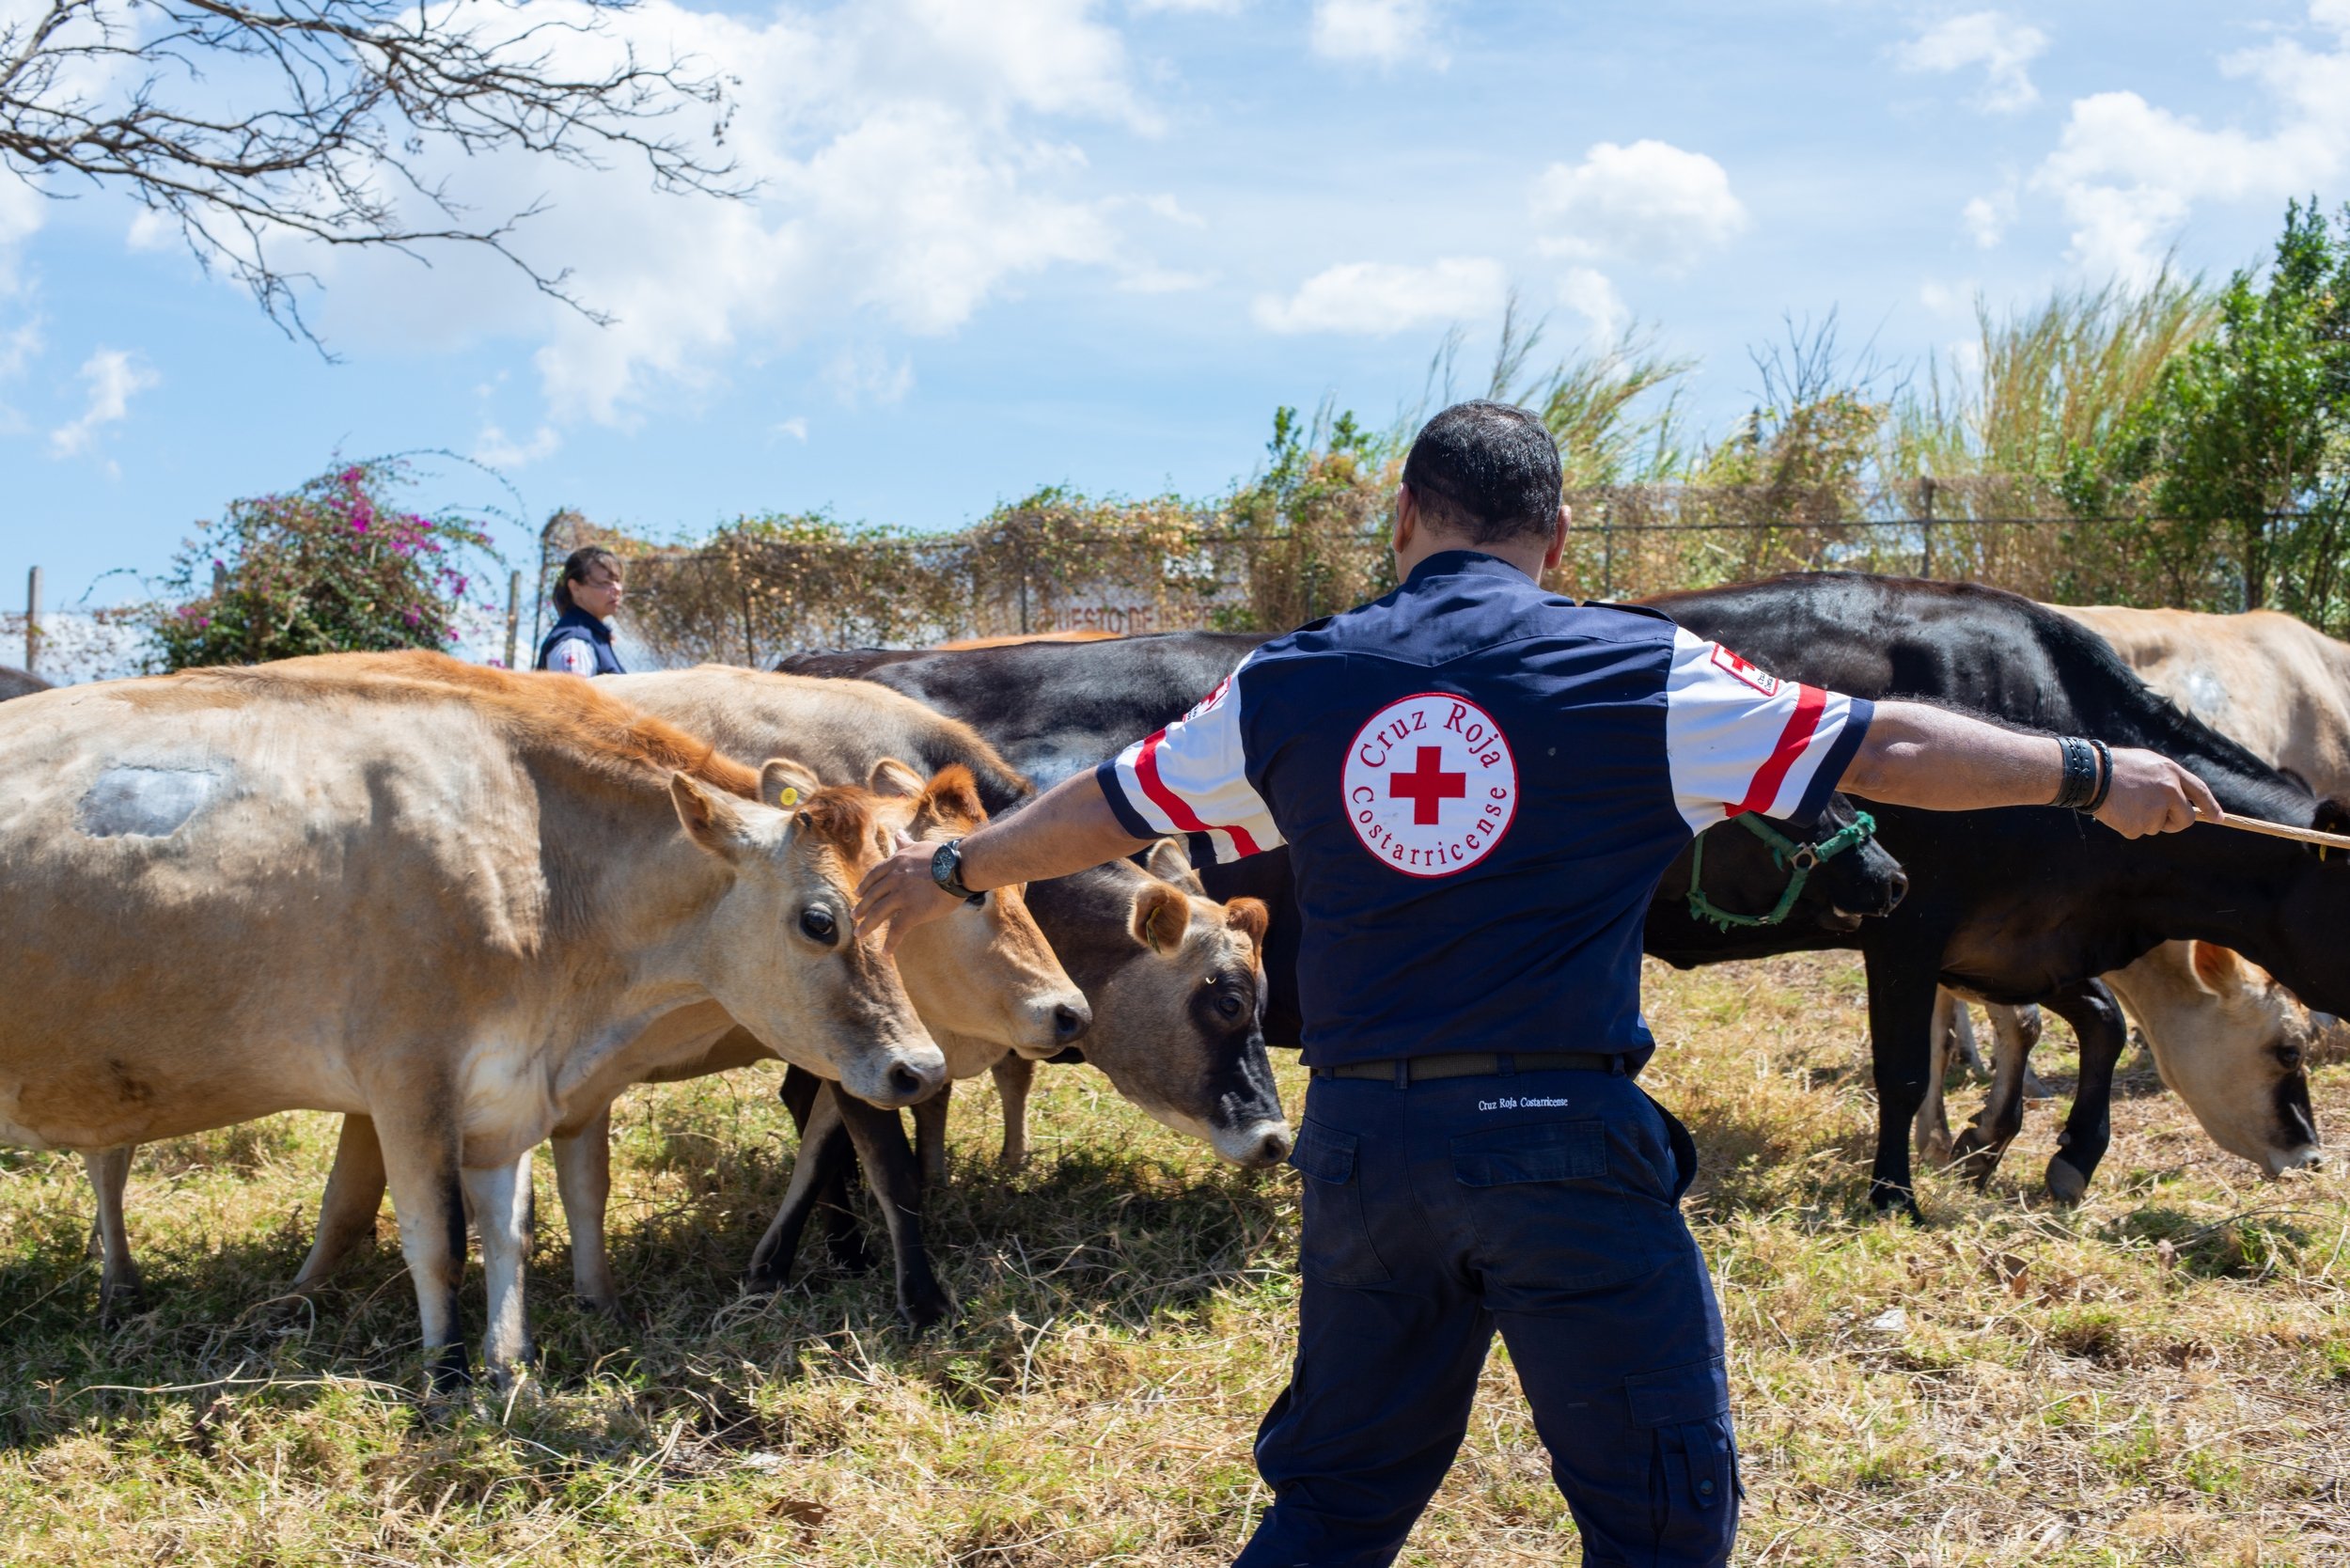 Røde Kors-medarbejder lærer at drive kvæg sammen uden at stresse dyrene.